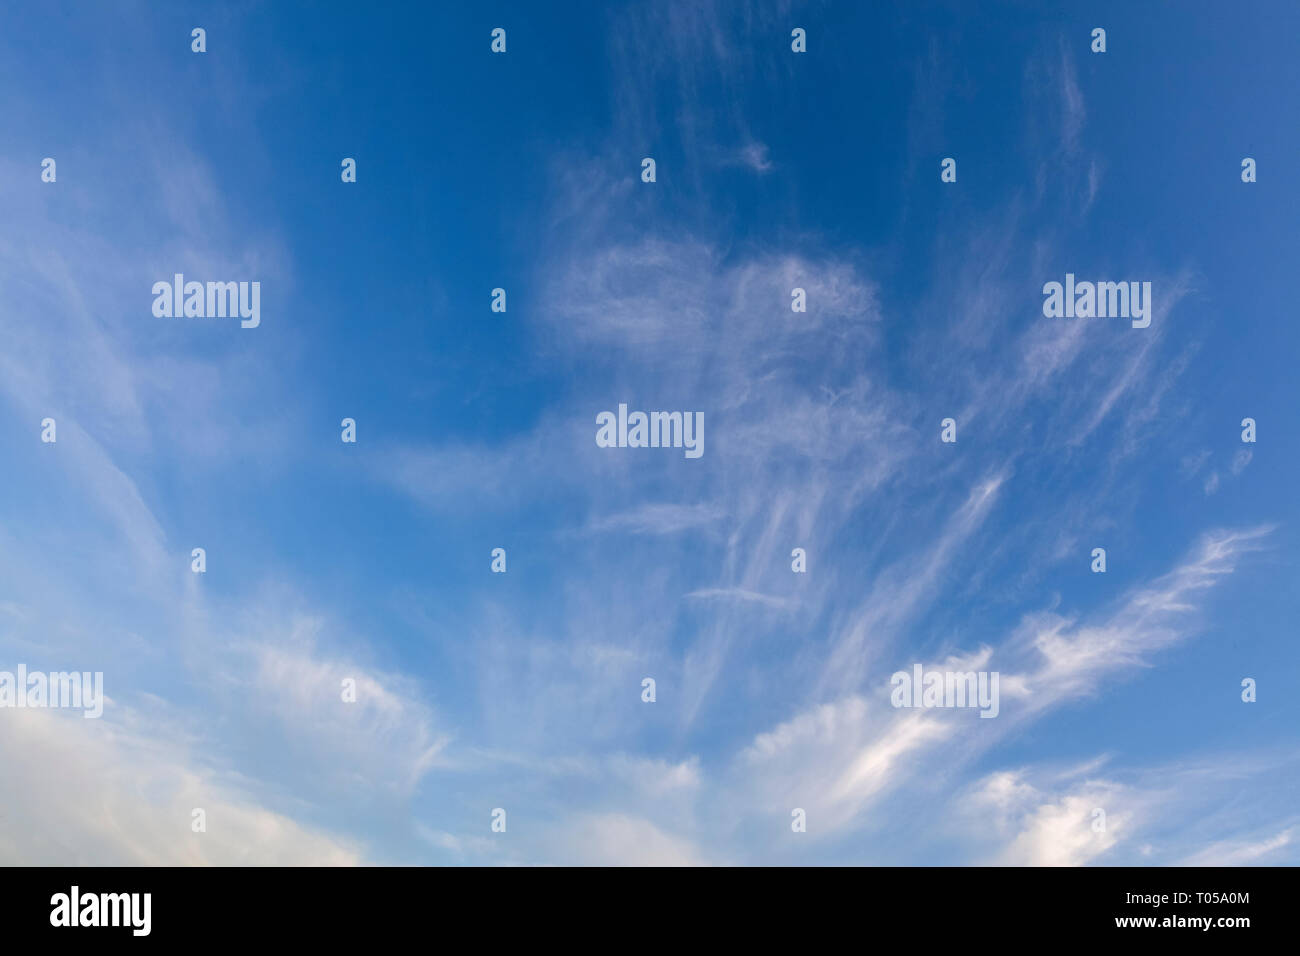 Wispy Weisse Wolken in einem klaren blauen Himmel Hintergrund. Cloudscape Sicht Stockfoto